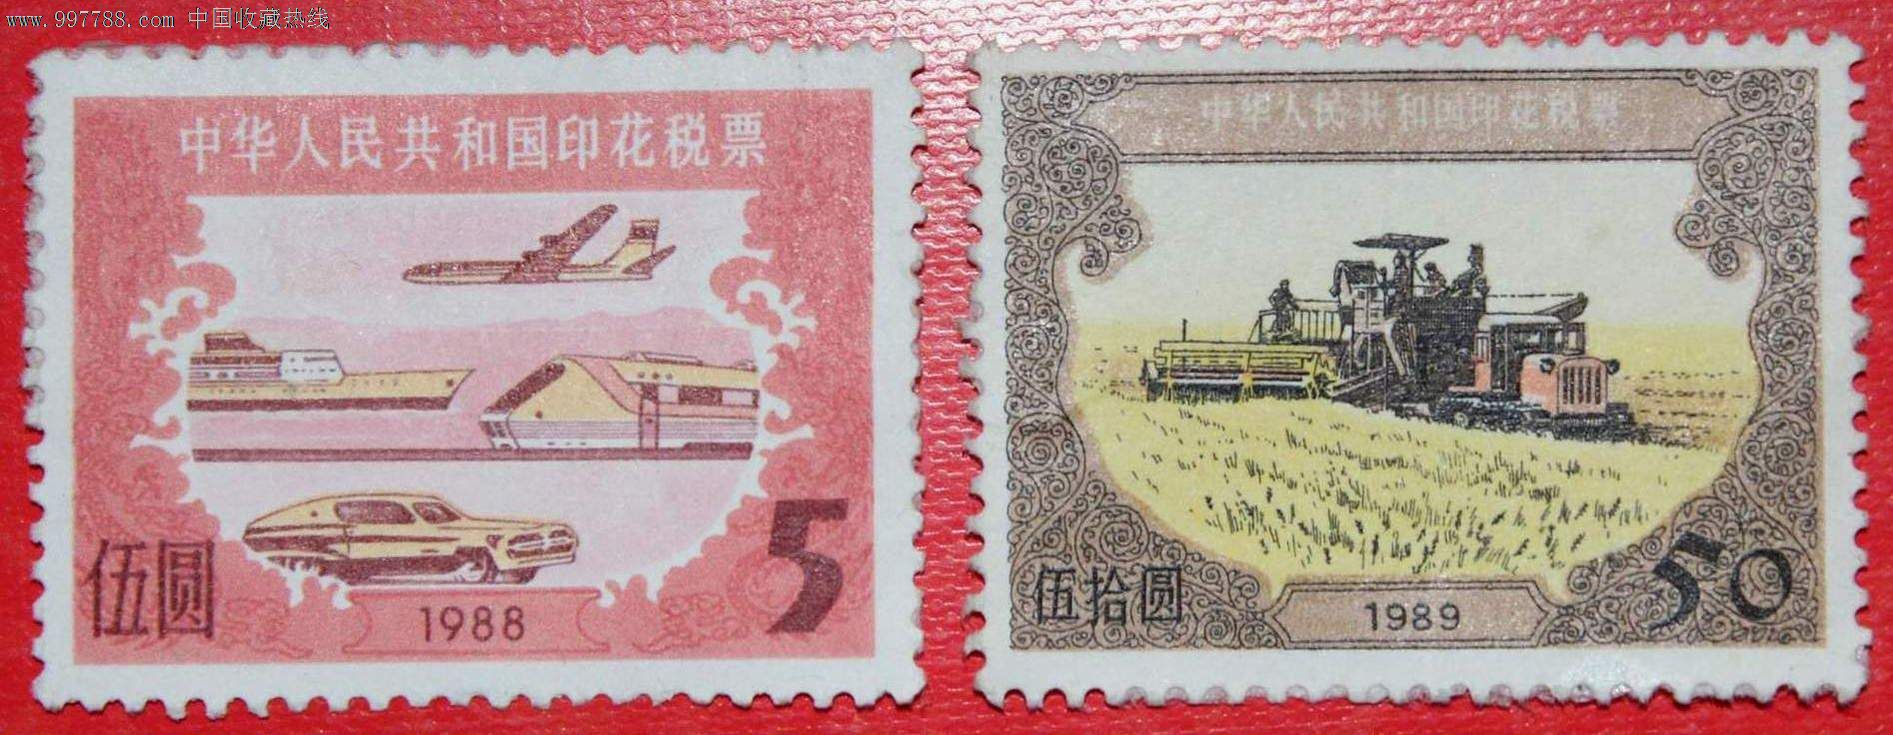 1989年中华人民共和国印花税票\50元面值\新1